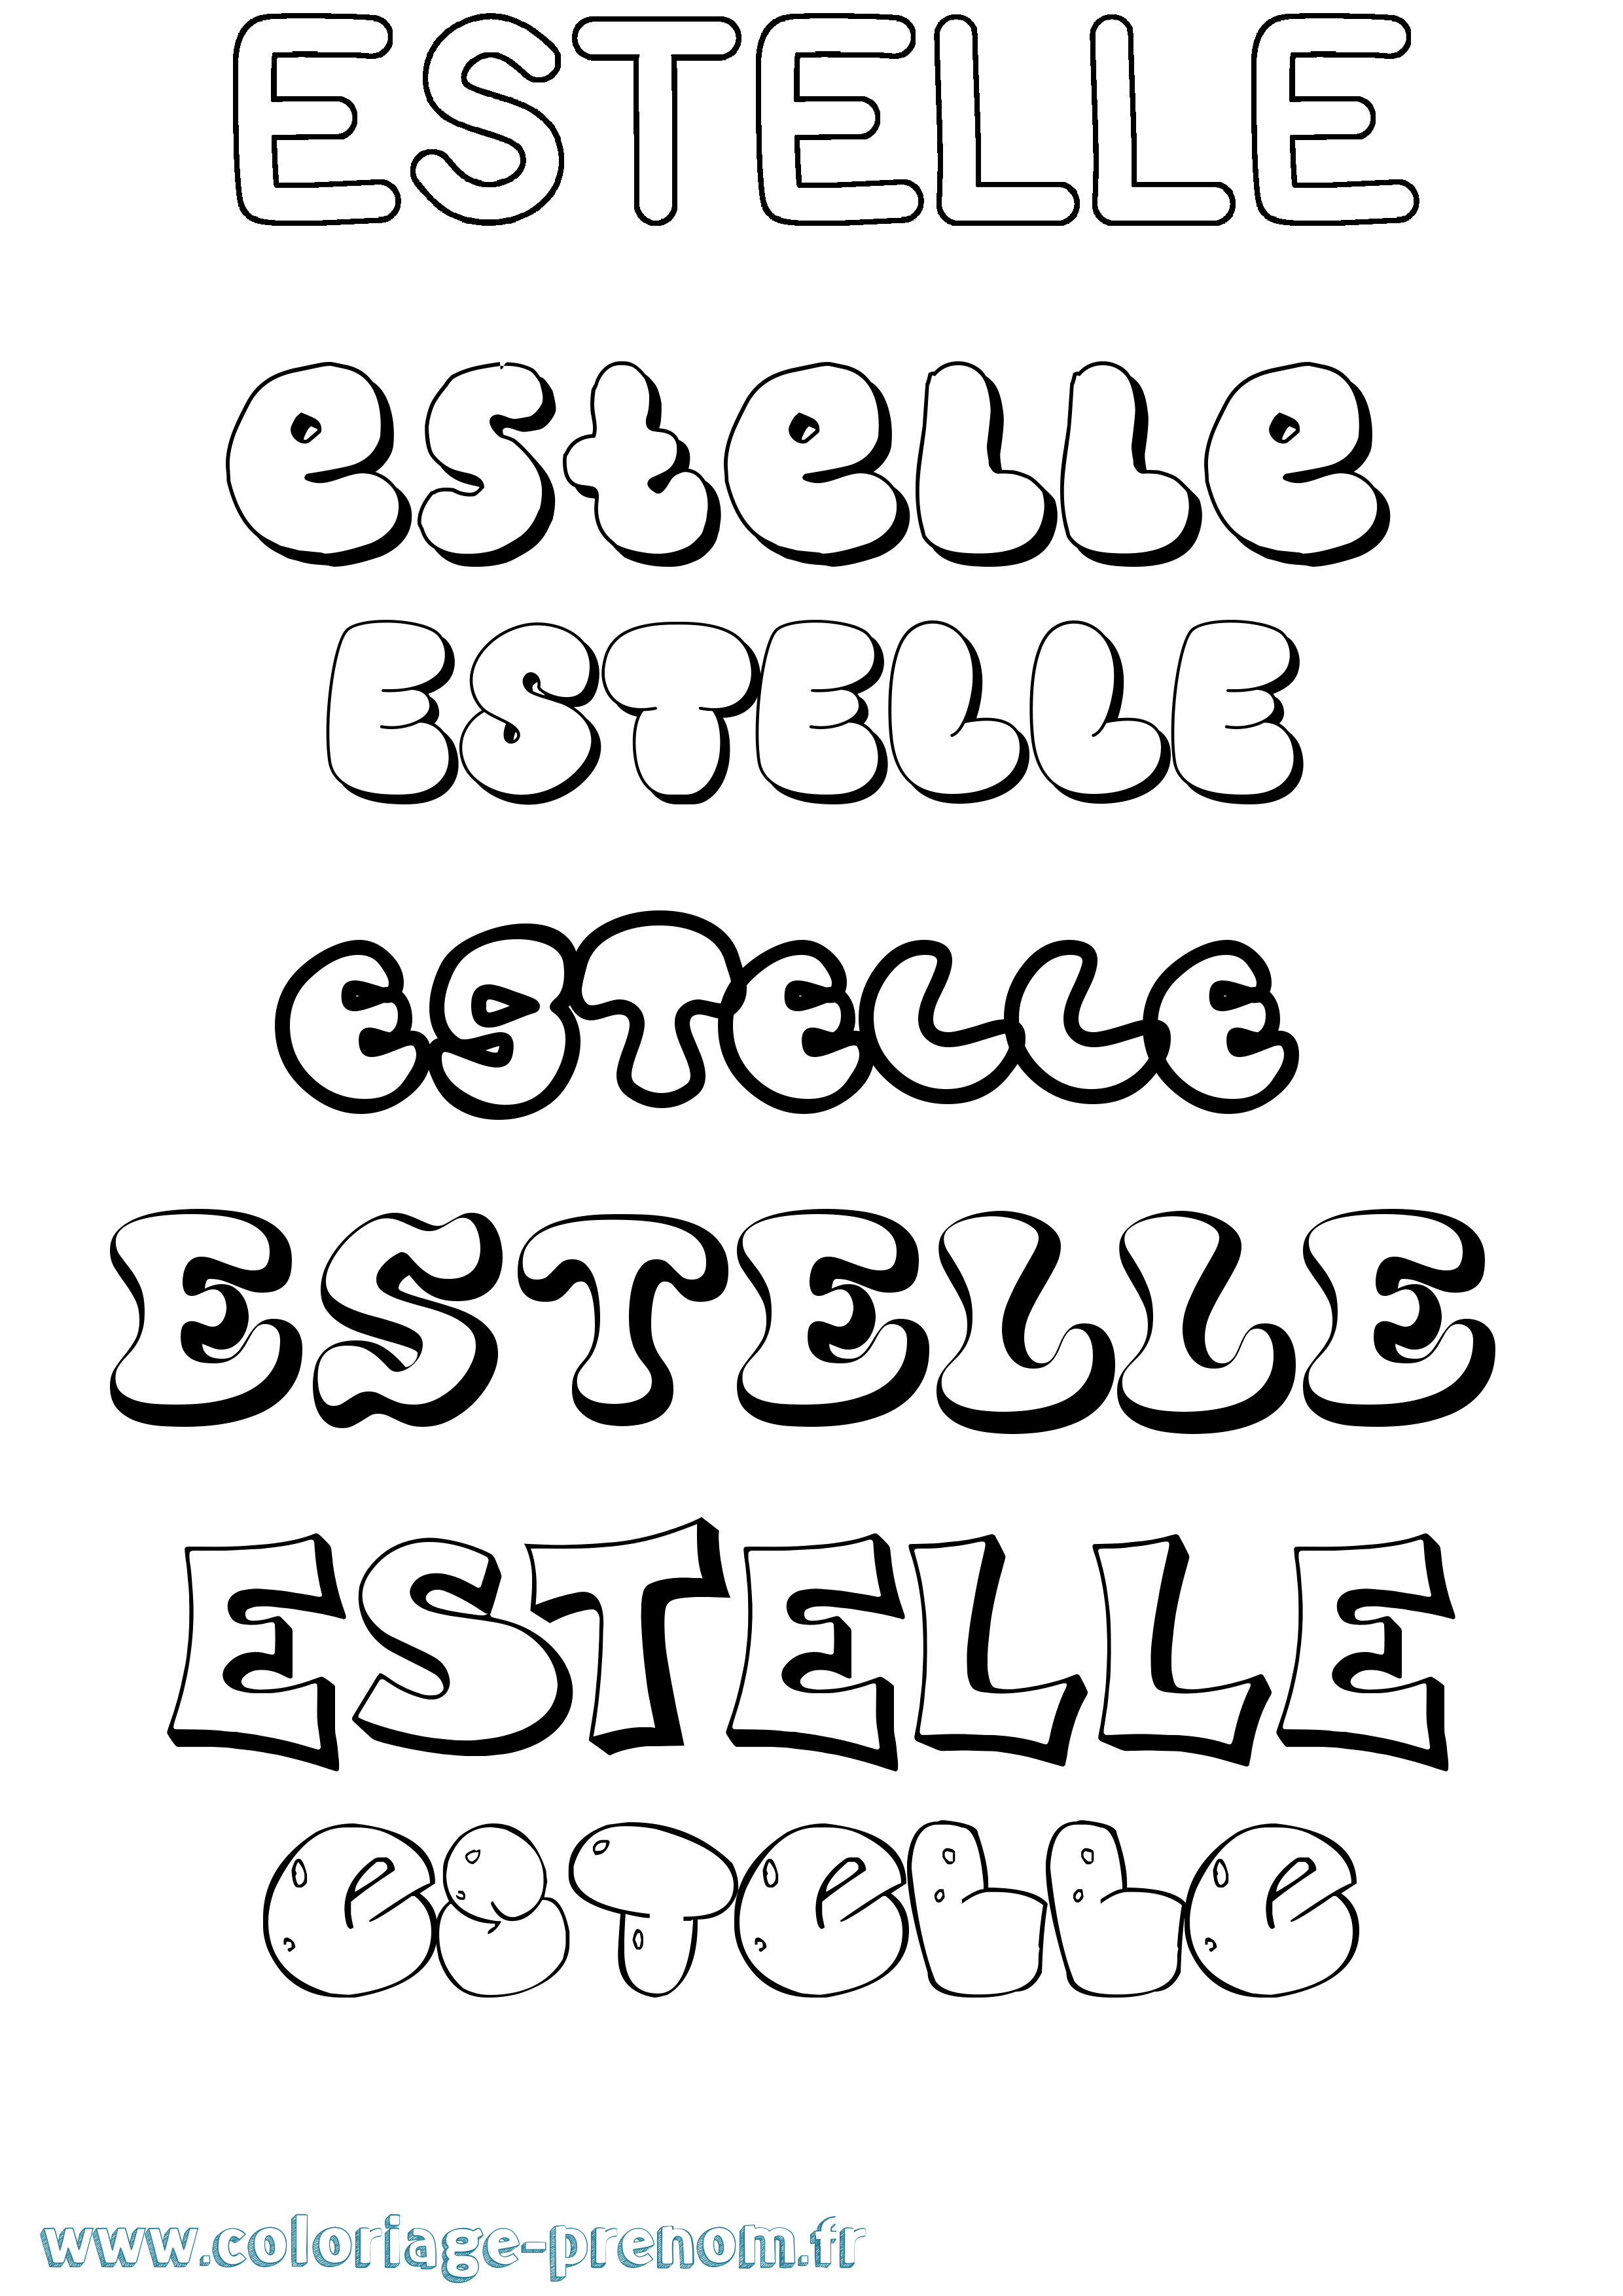 Coloriage prénom Estelle Bubble